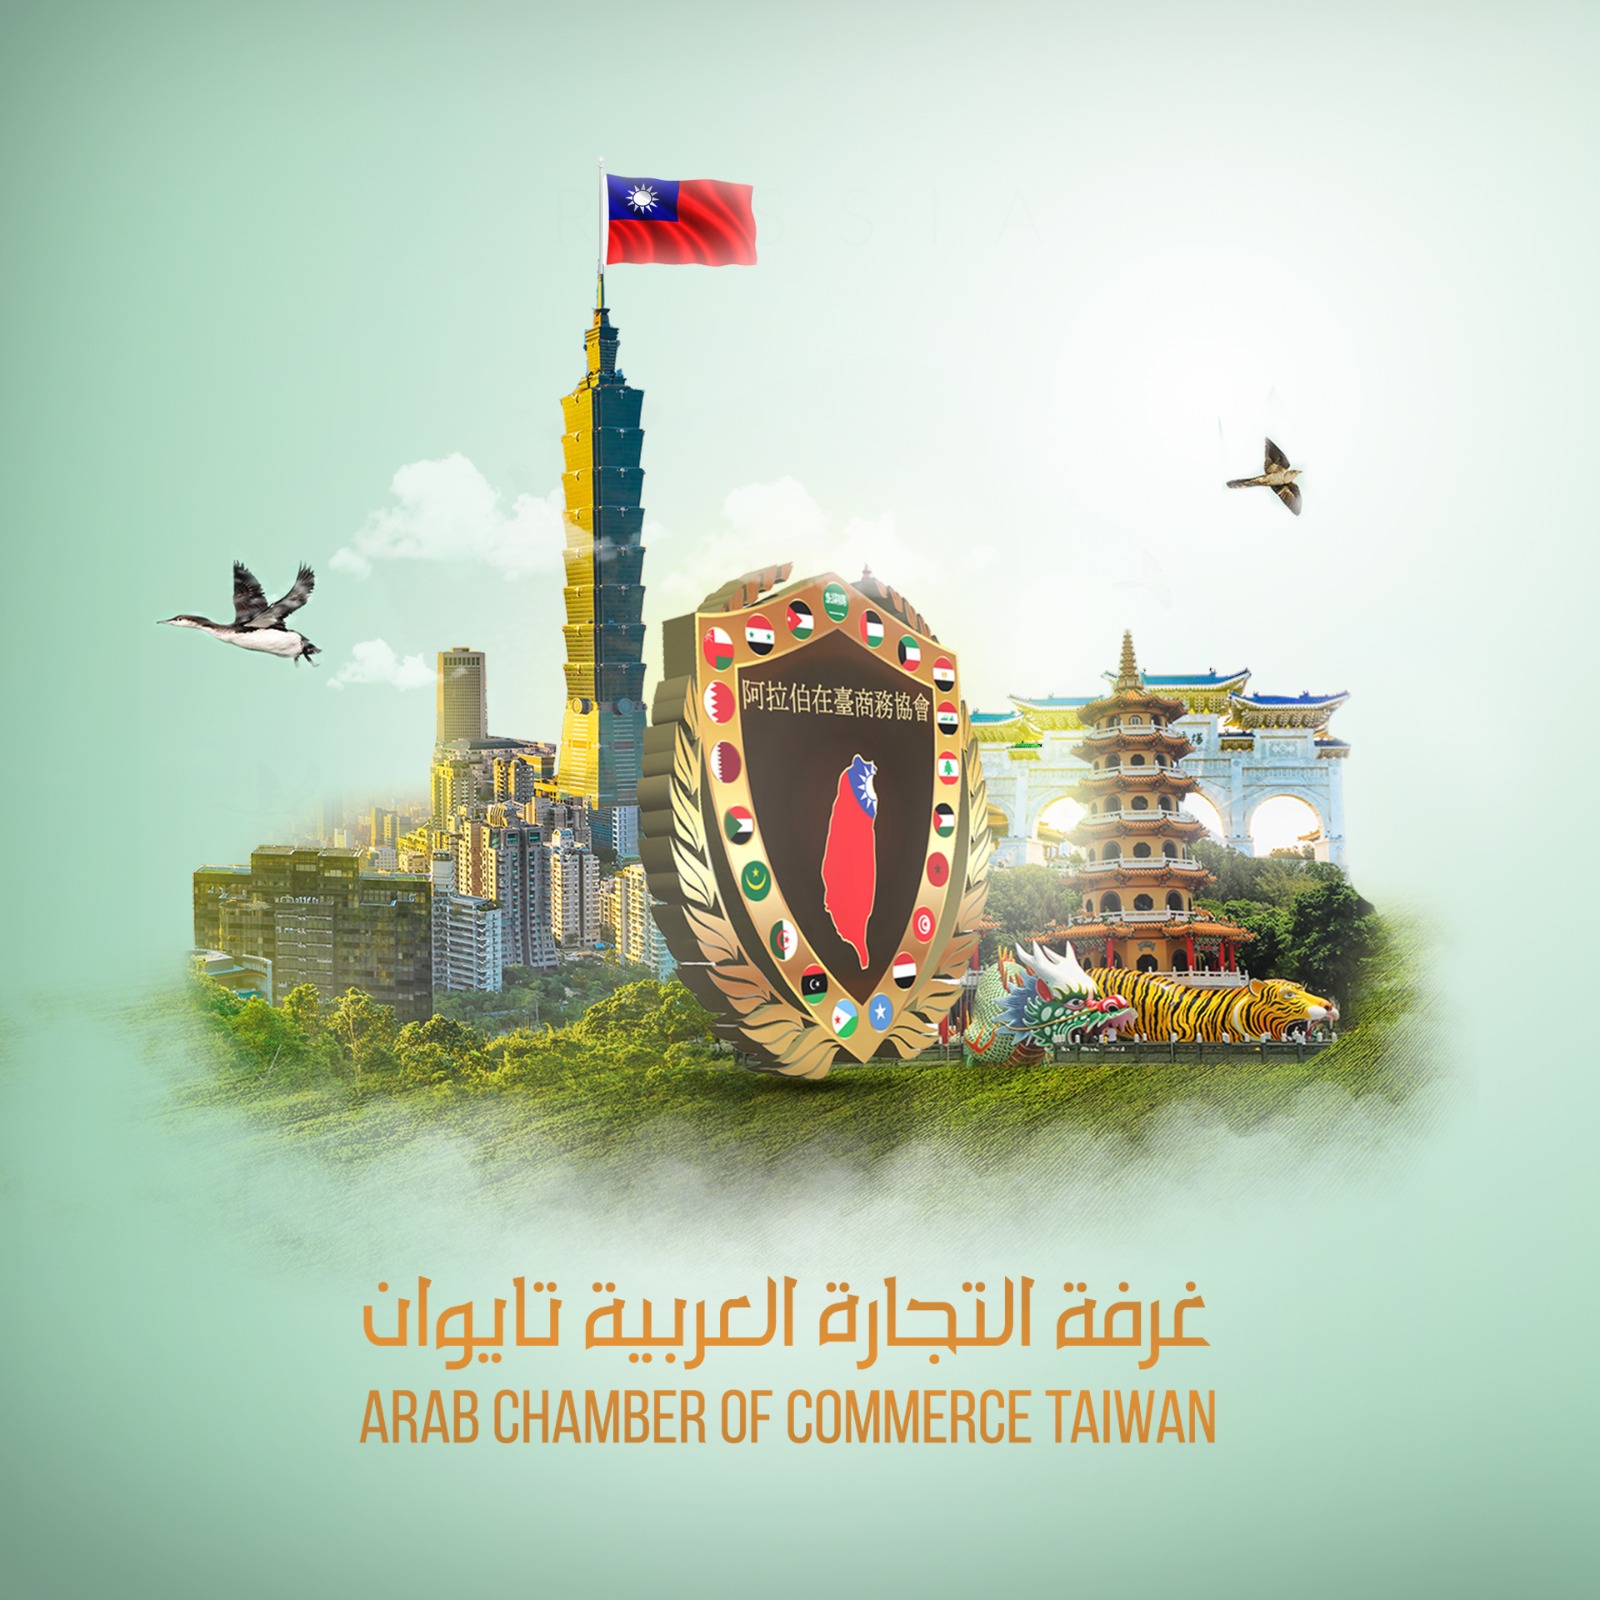 阿拉伯在台商務協會ARAB CHAMBER OF COMMERCE TAIWAN - 20220408161127-405569270.jpeg(圖)